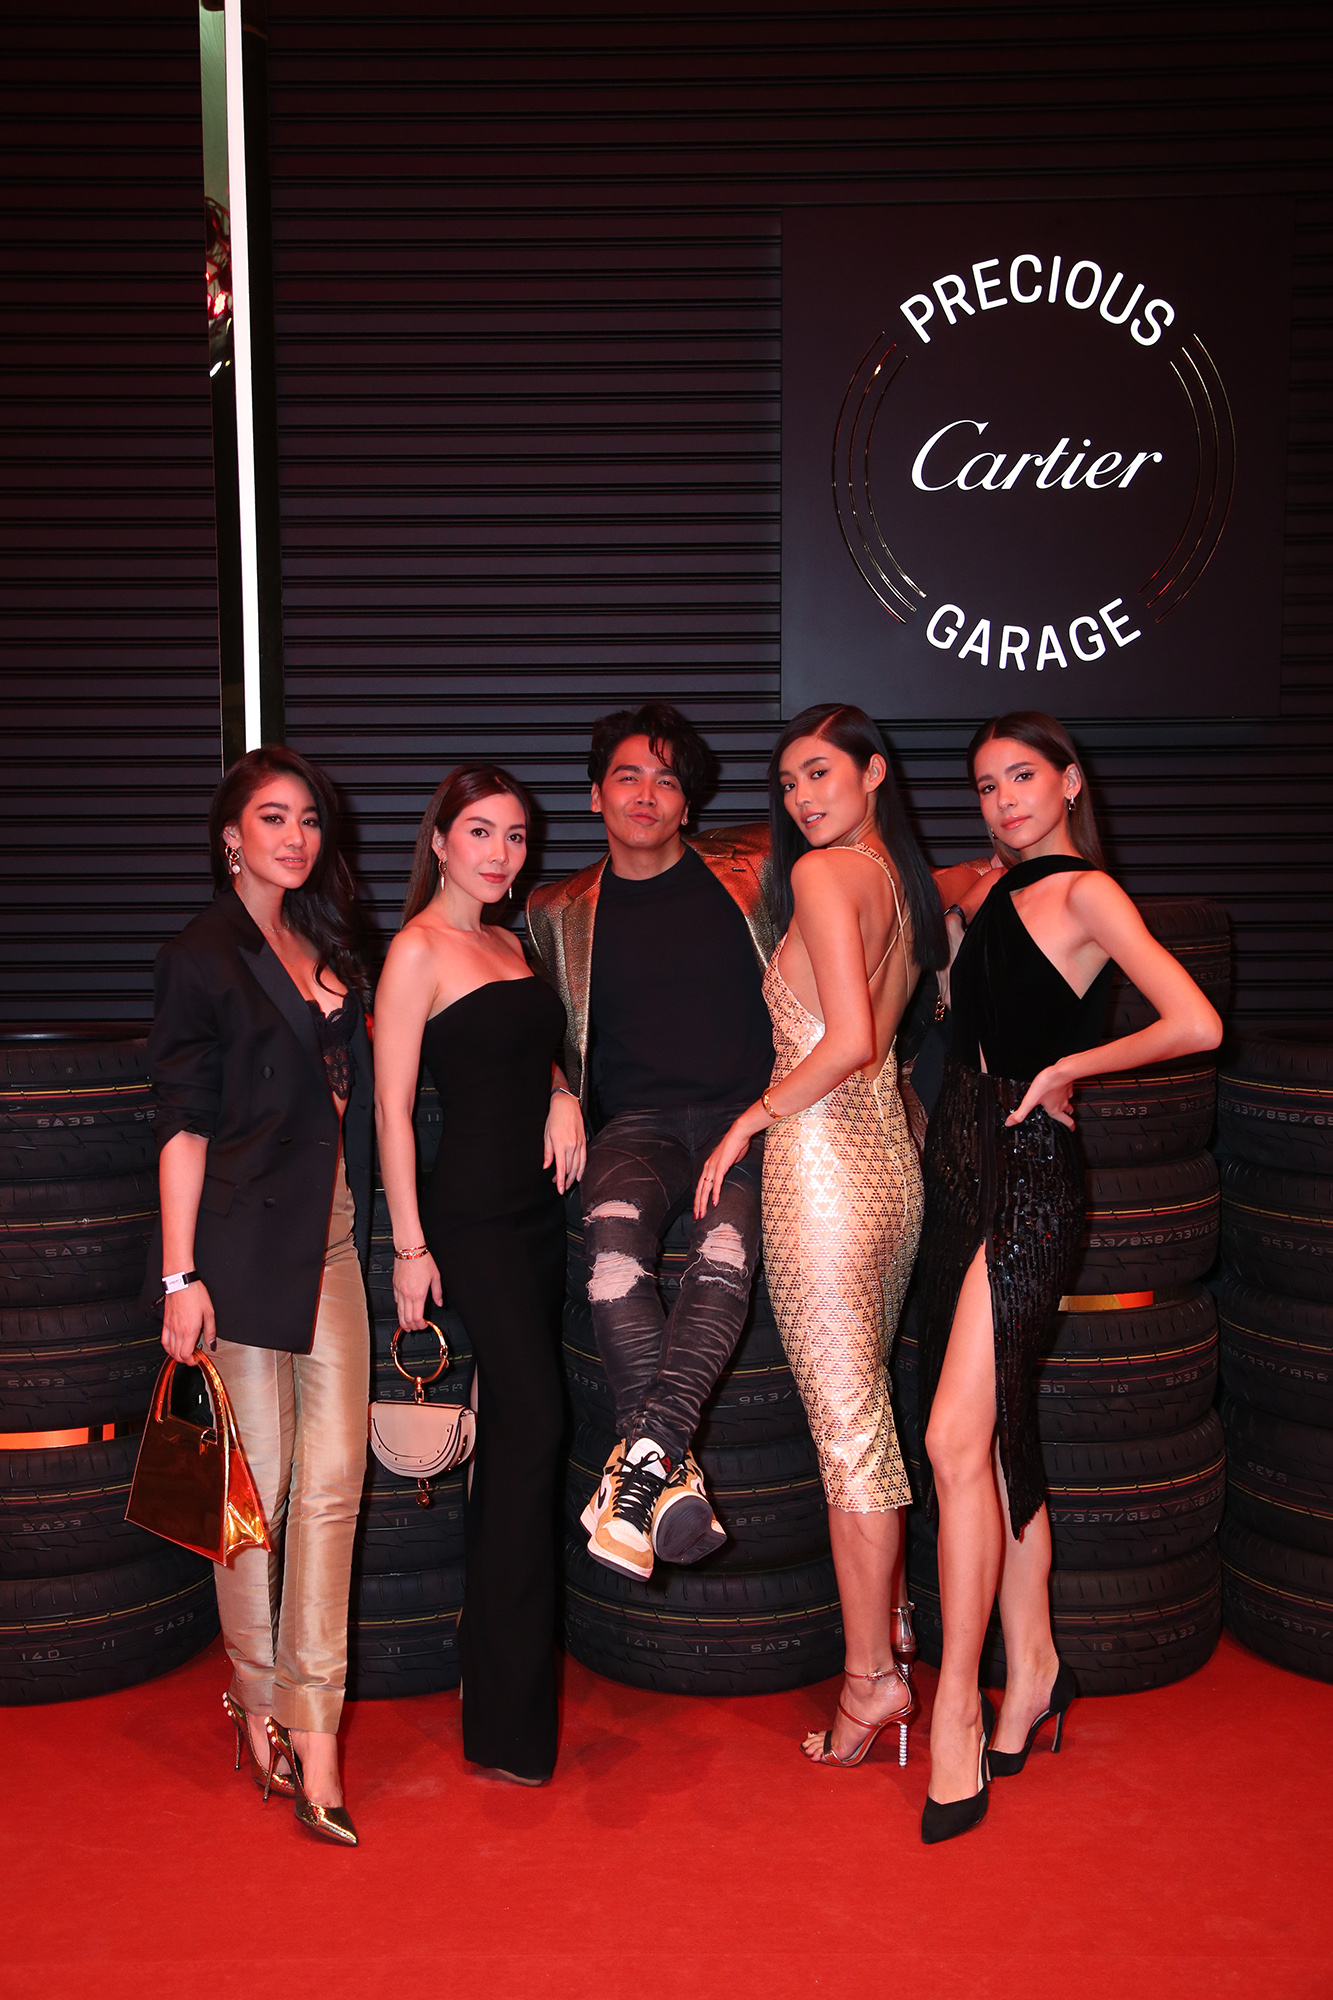 Cartier Precious Garage พตตา วนเสน พเค โยเกรต นาตาล ดเชยง